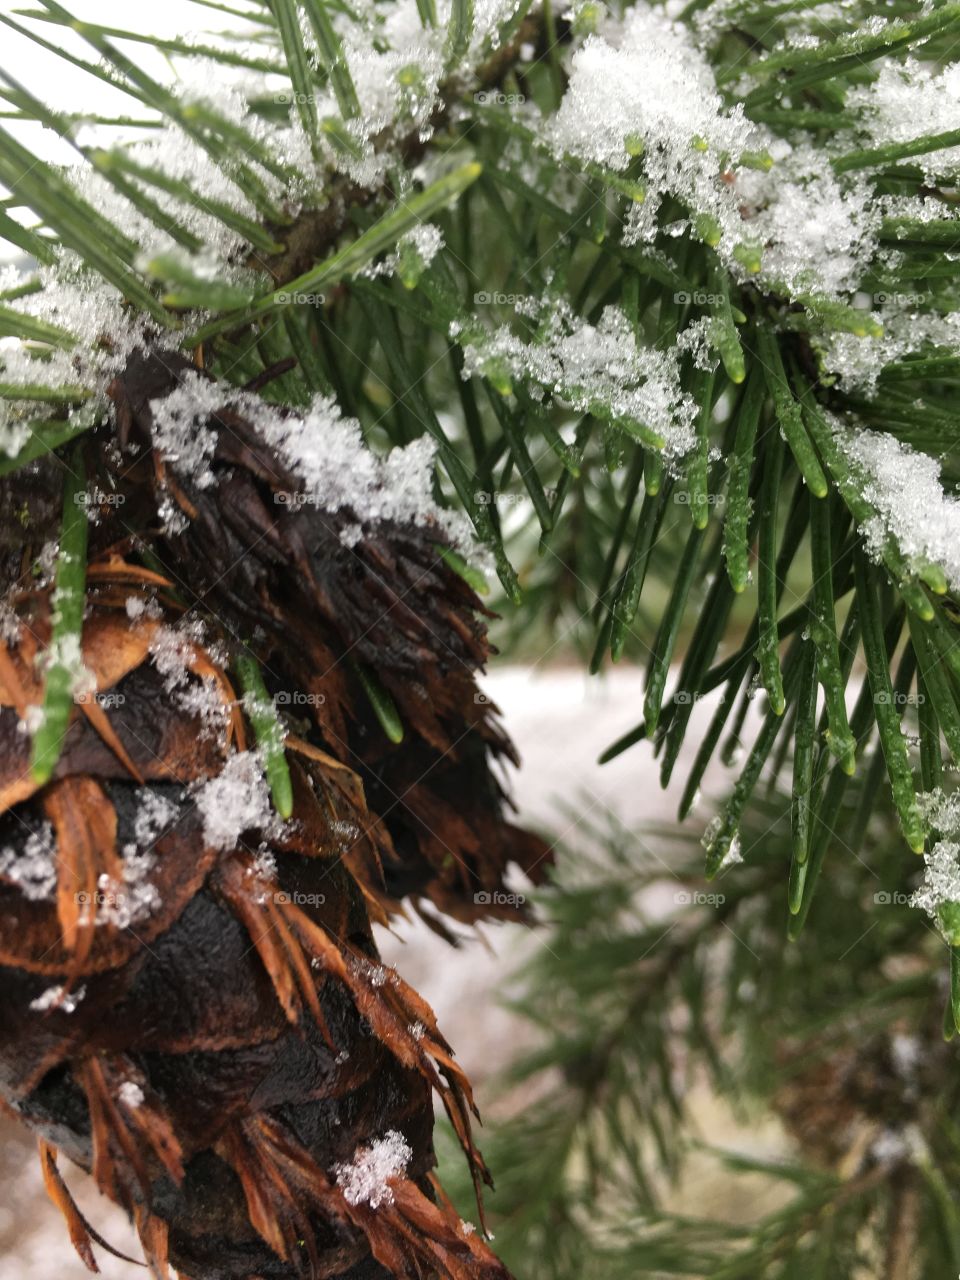 Winter pine cone